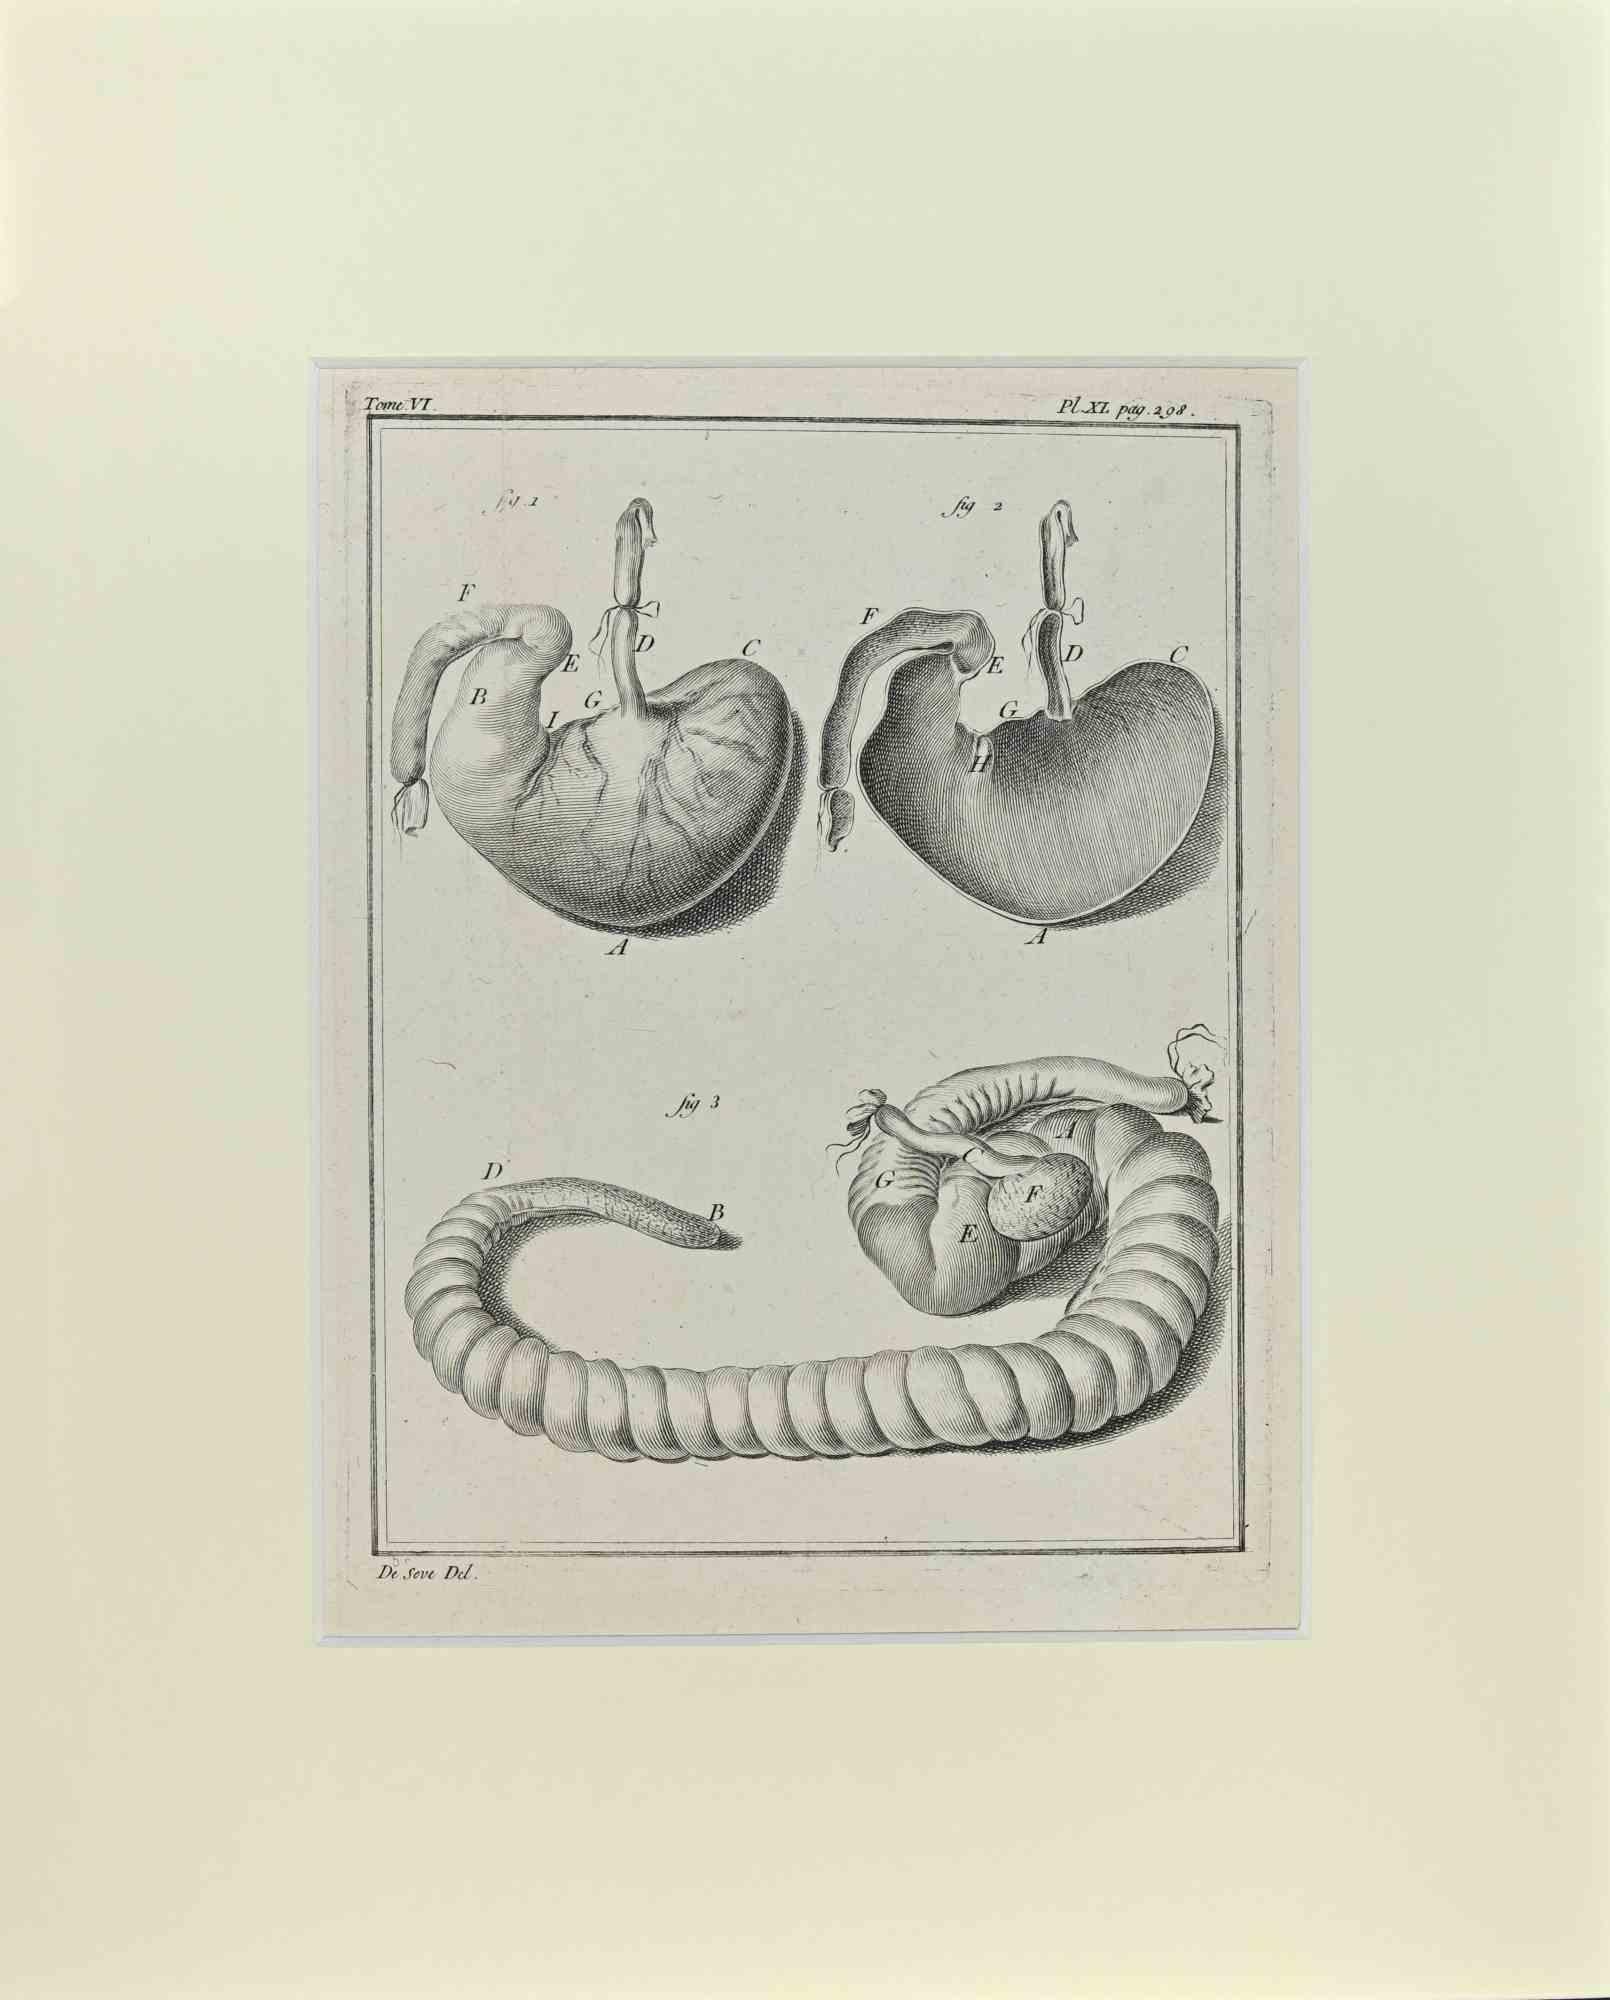 Jacques de Seve Animal Print - Internal Organs of Animal - Etching by Jacques De Sève - 1771